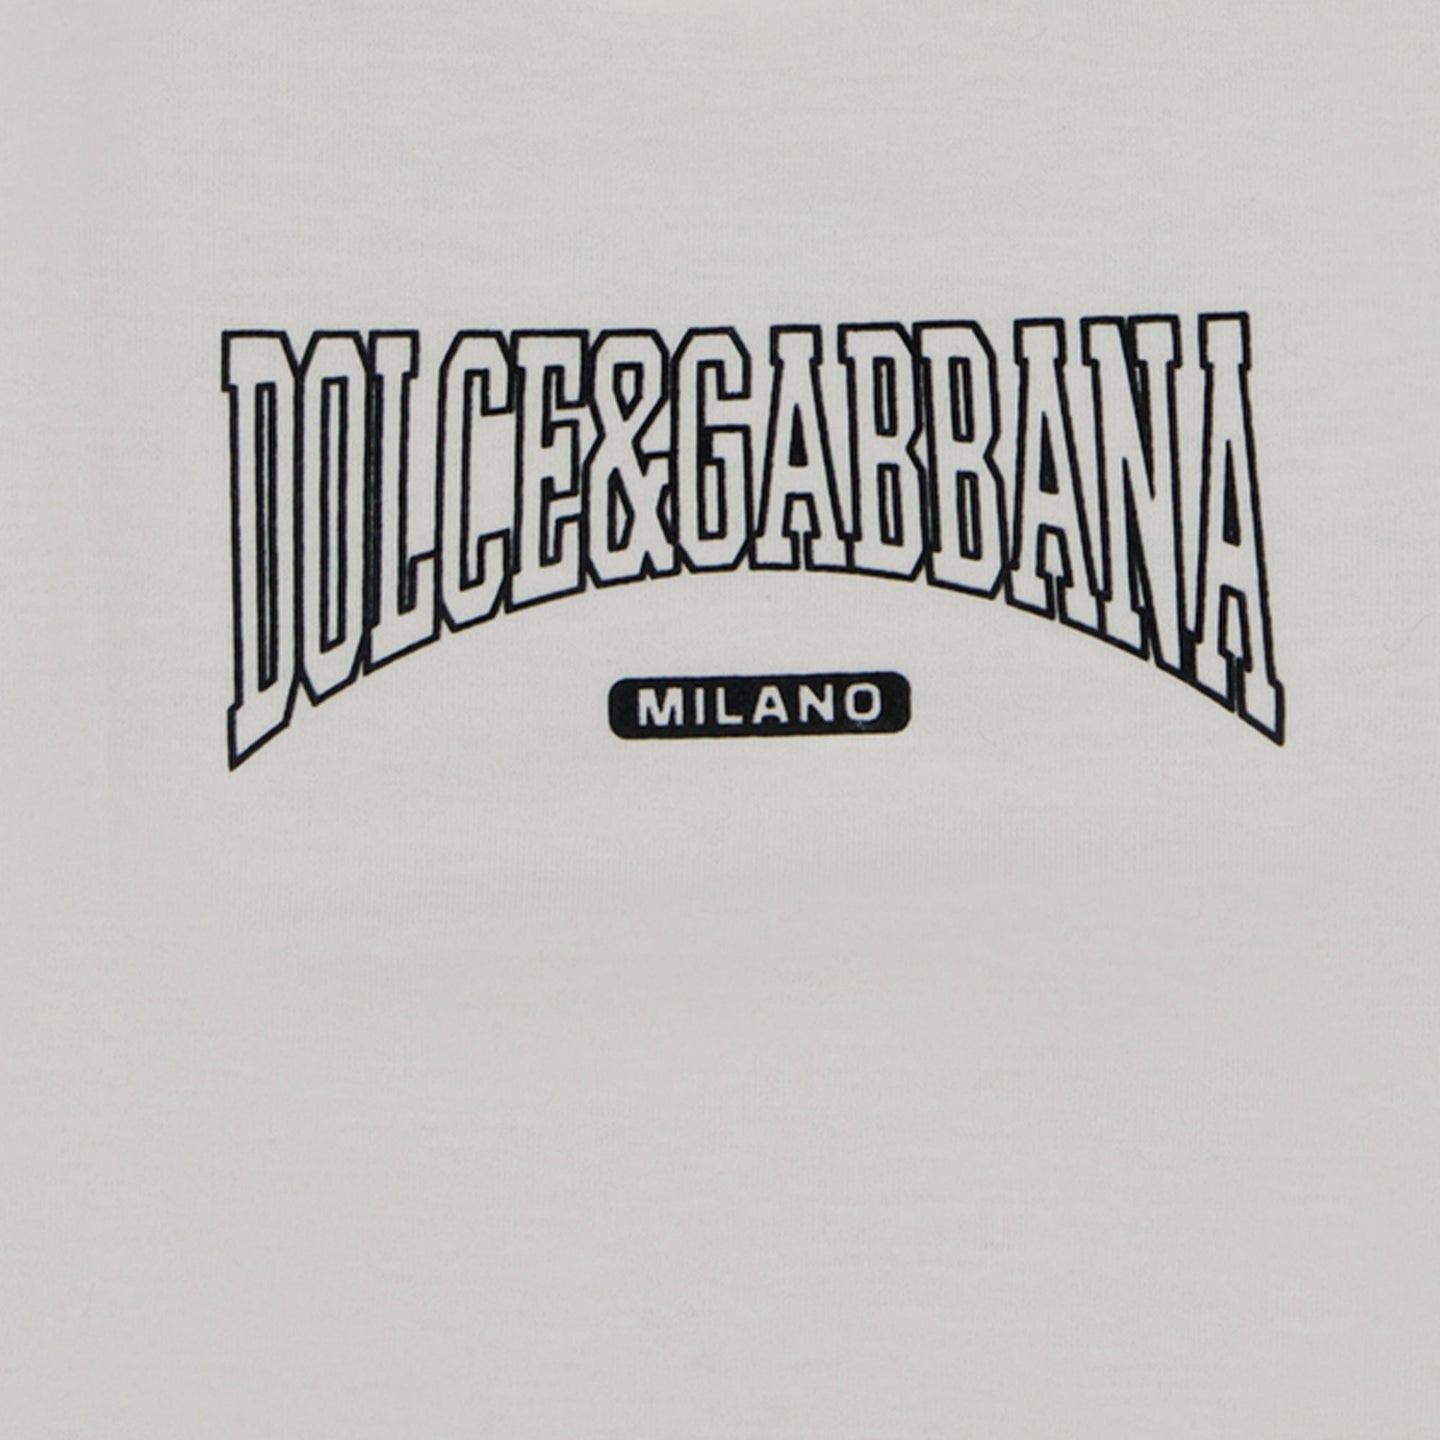 Dolce & Gabbana Bébé Garçons T-shirt Blanc